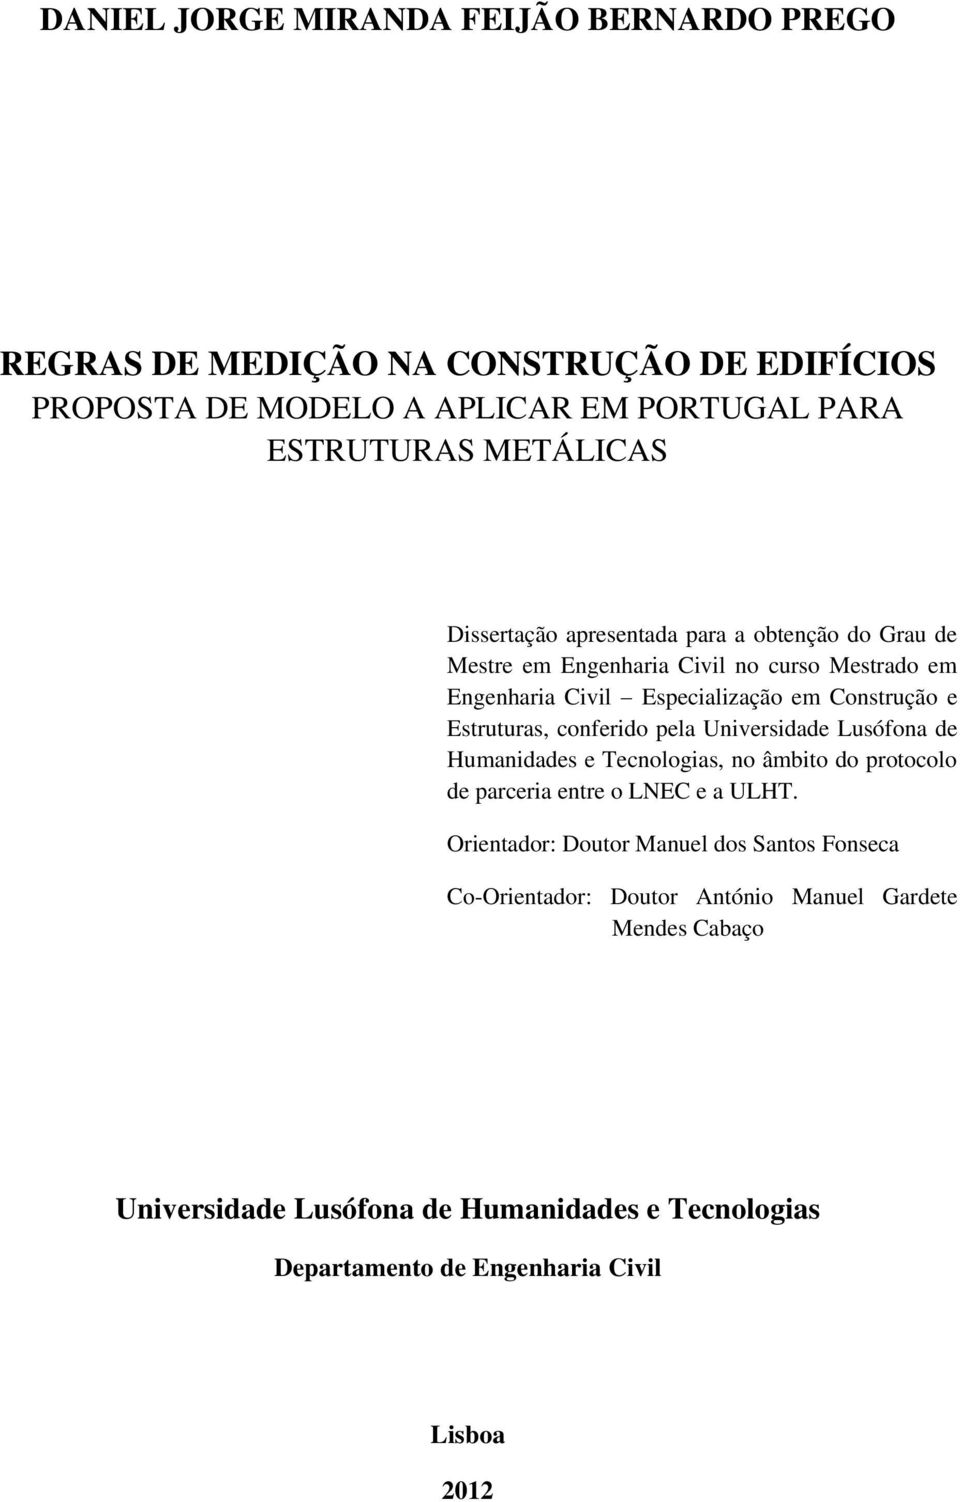 conferido pela Universidade Lusófona de Humanidades e Tecnologias, no âmbito do protocolo de parceria entre o LNEC e a ULHT.